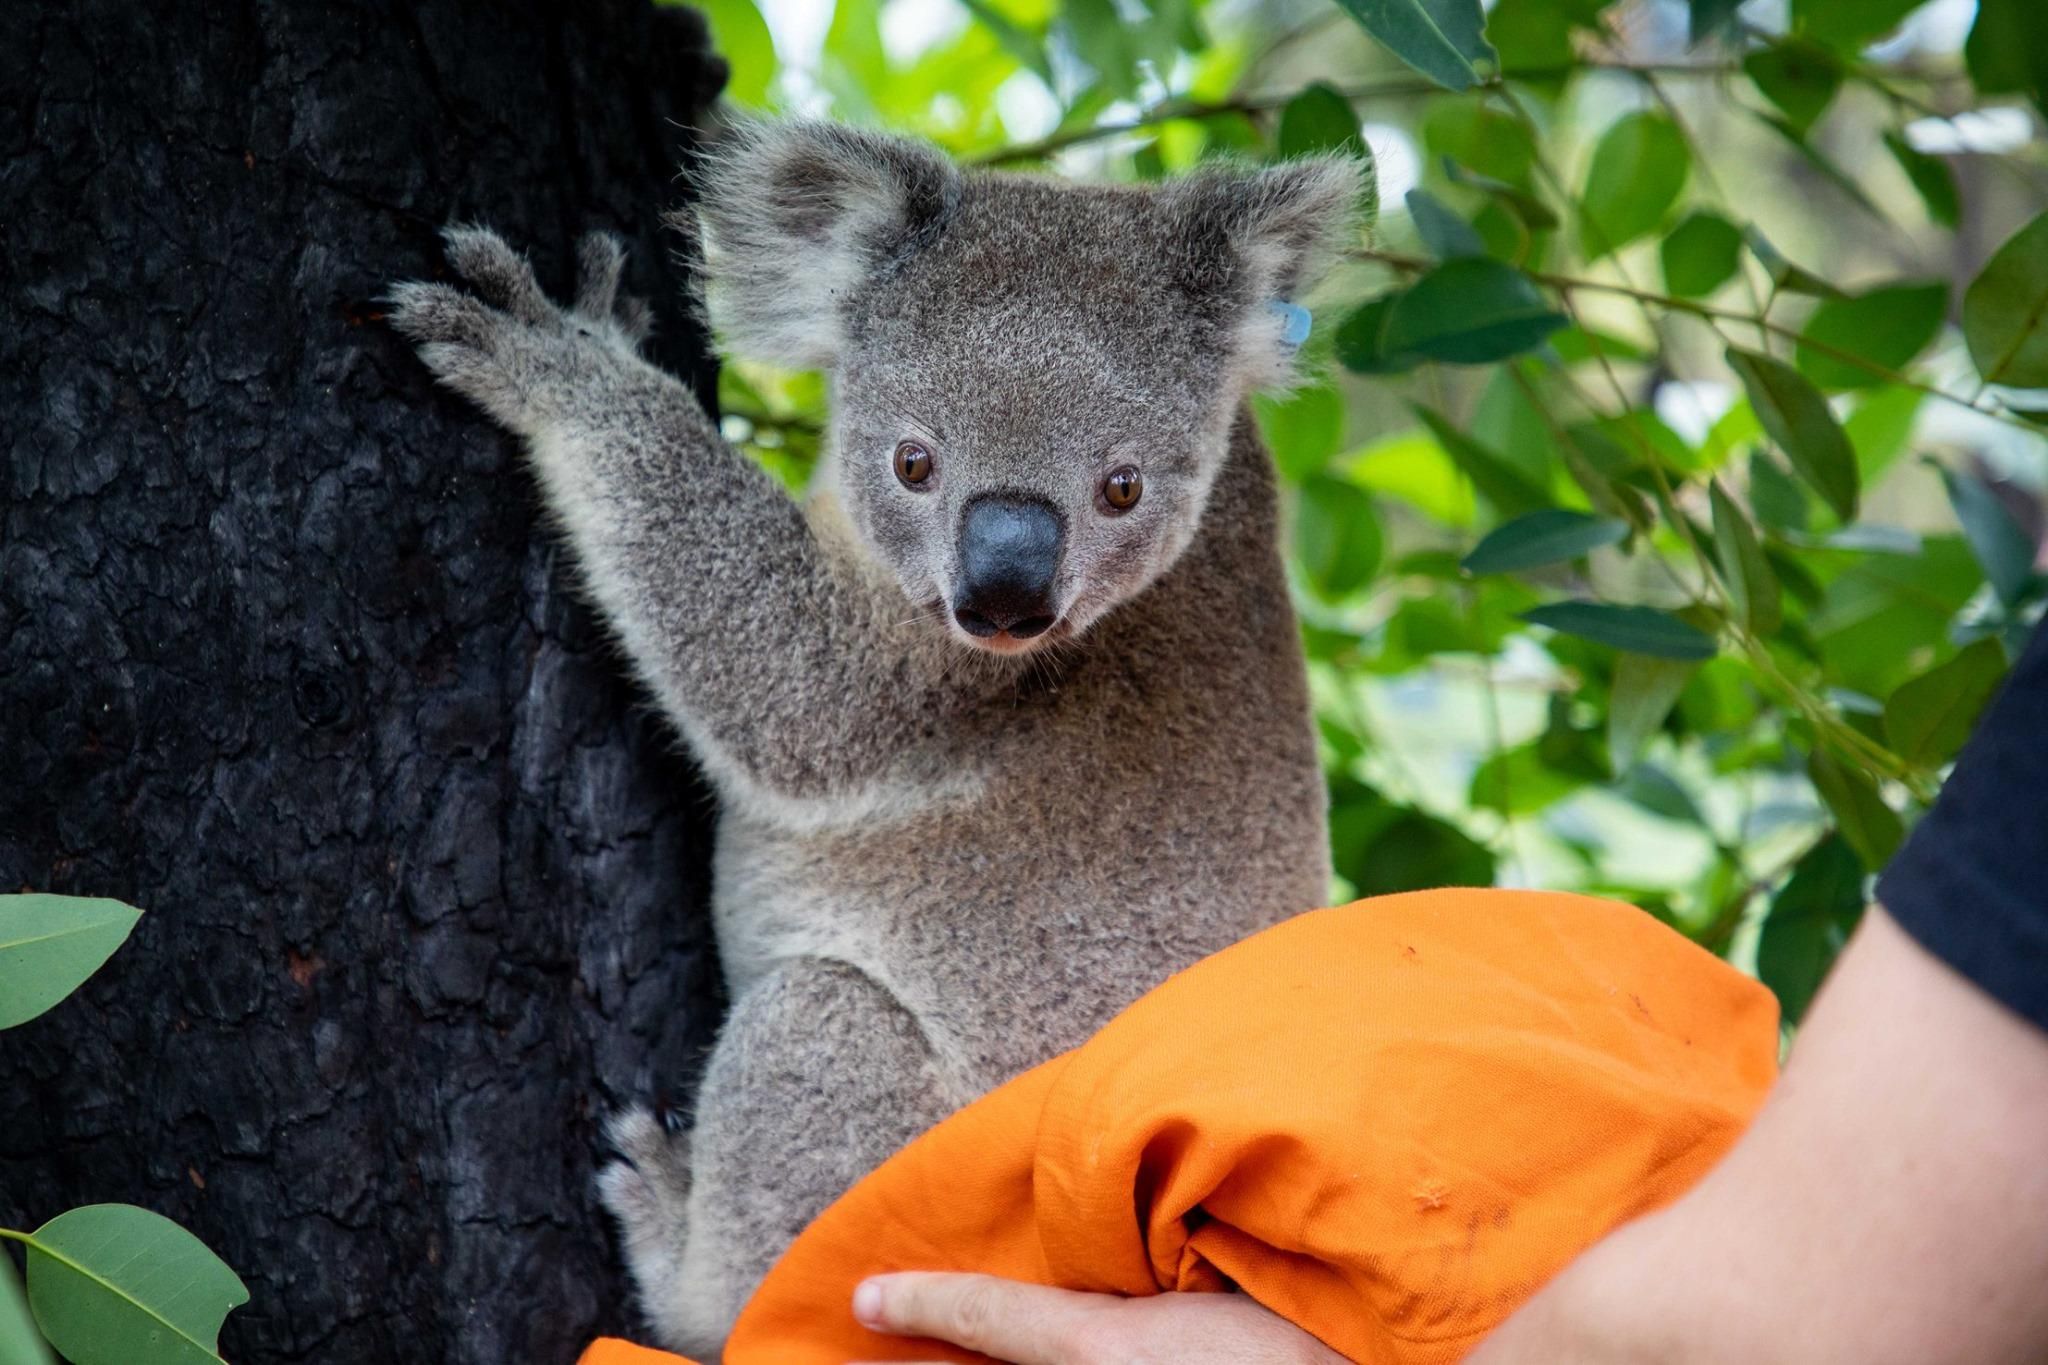 Постраждалі в австралійських пожежах коали повертаються додому: зворушливі фото